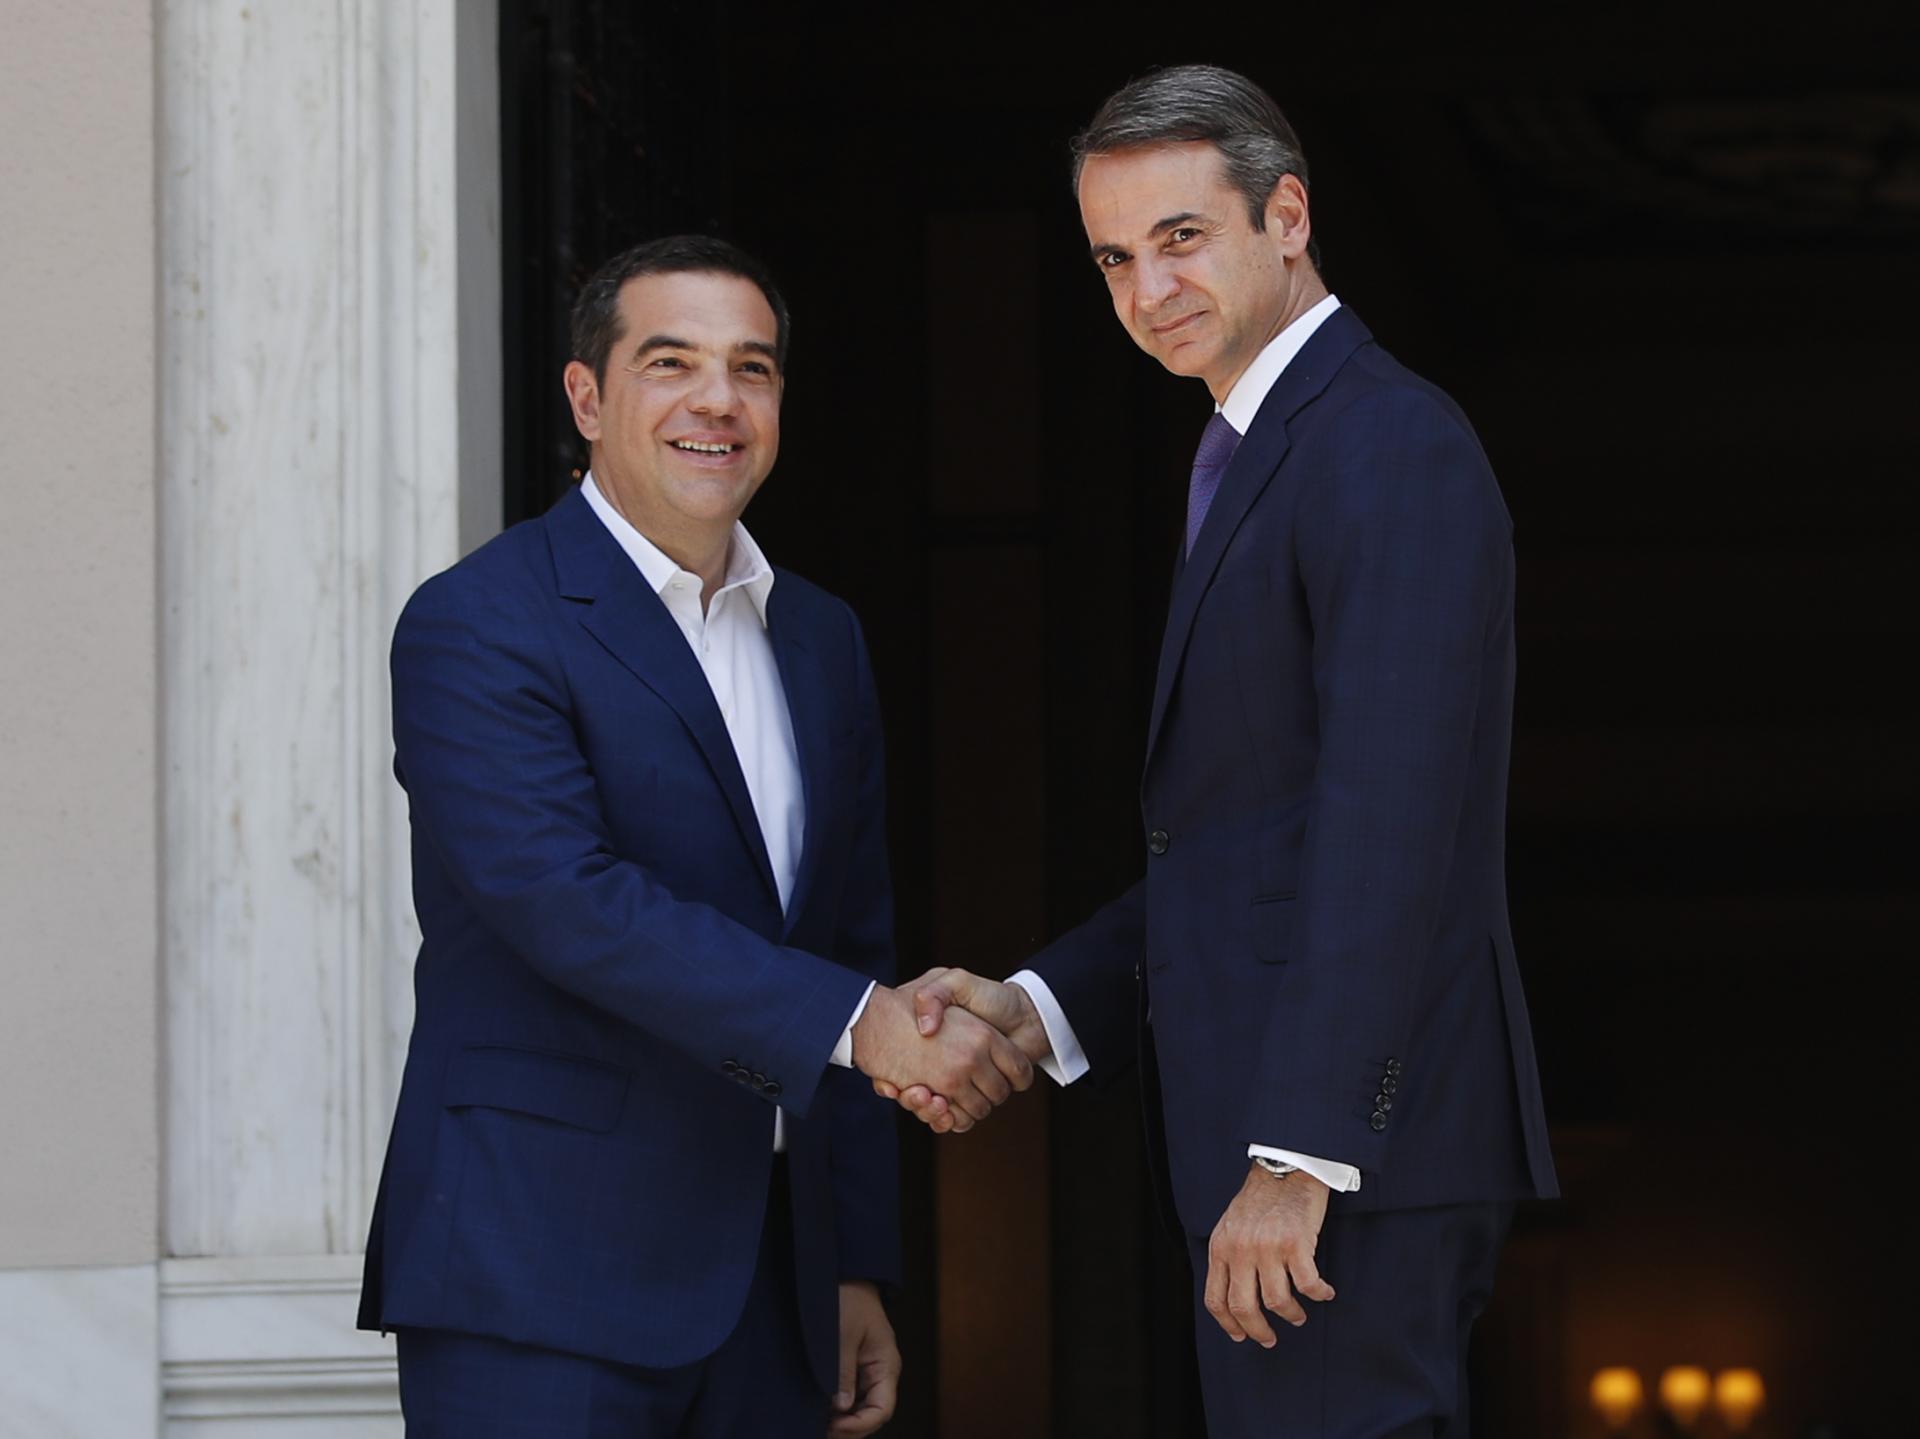 8. júl 2019 Atény, Grécko: Šéf strany Syriza Alexis Tsipras vítai nového gréckeho premiéra Kyriákosa Mitsotákisa, ktorý je šéfom stredopravicovej Novej demokracie.